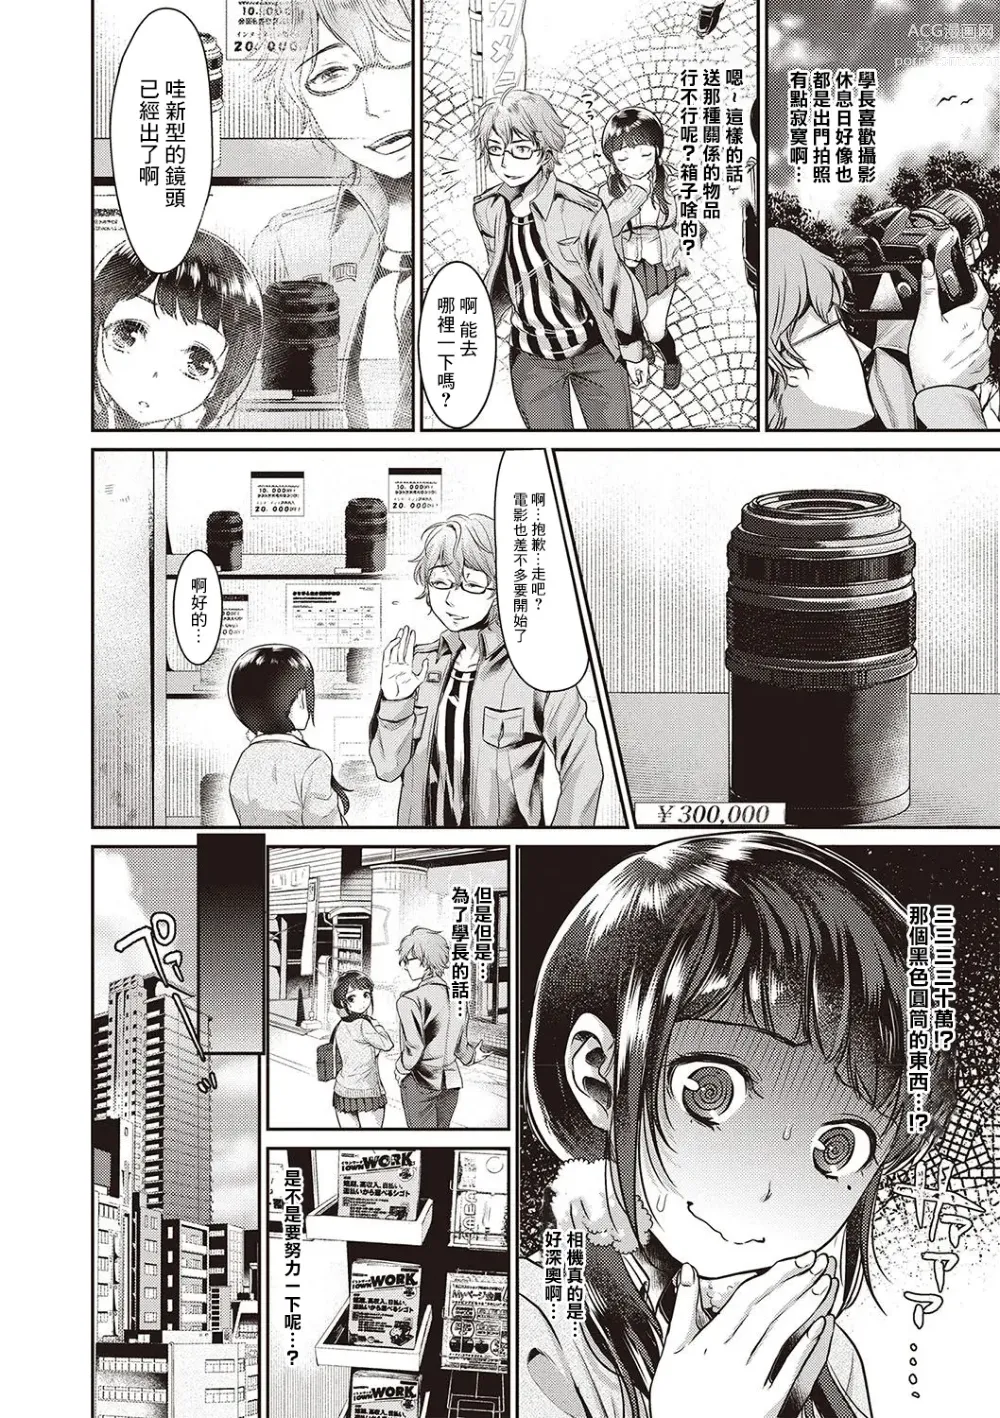 Page 2 of manga Oboreru Mesu JK!